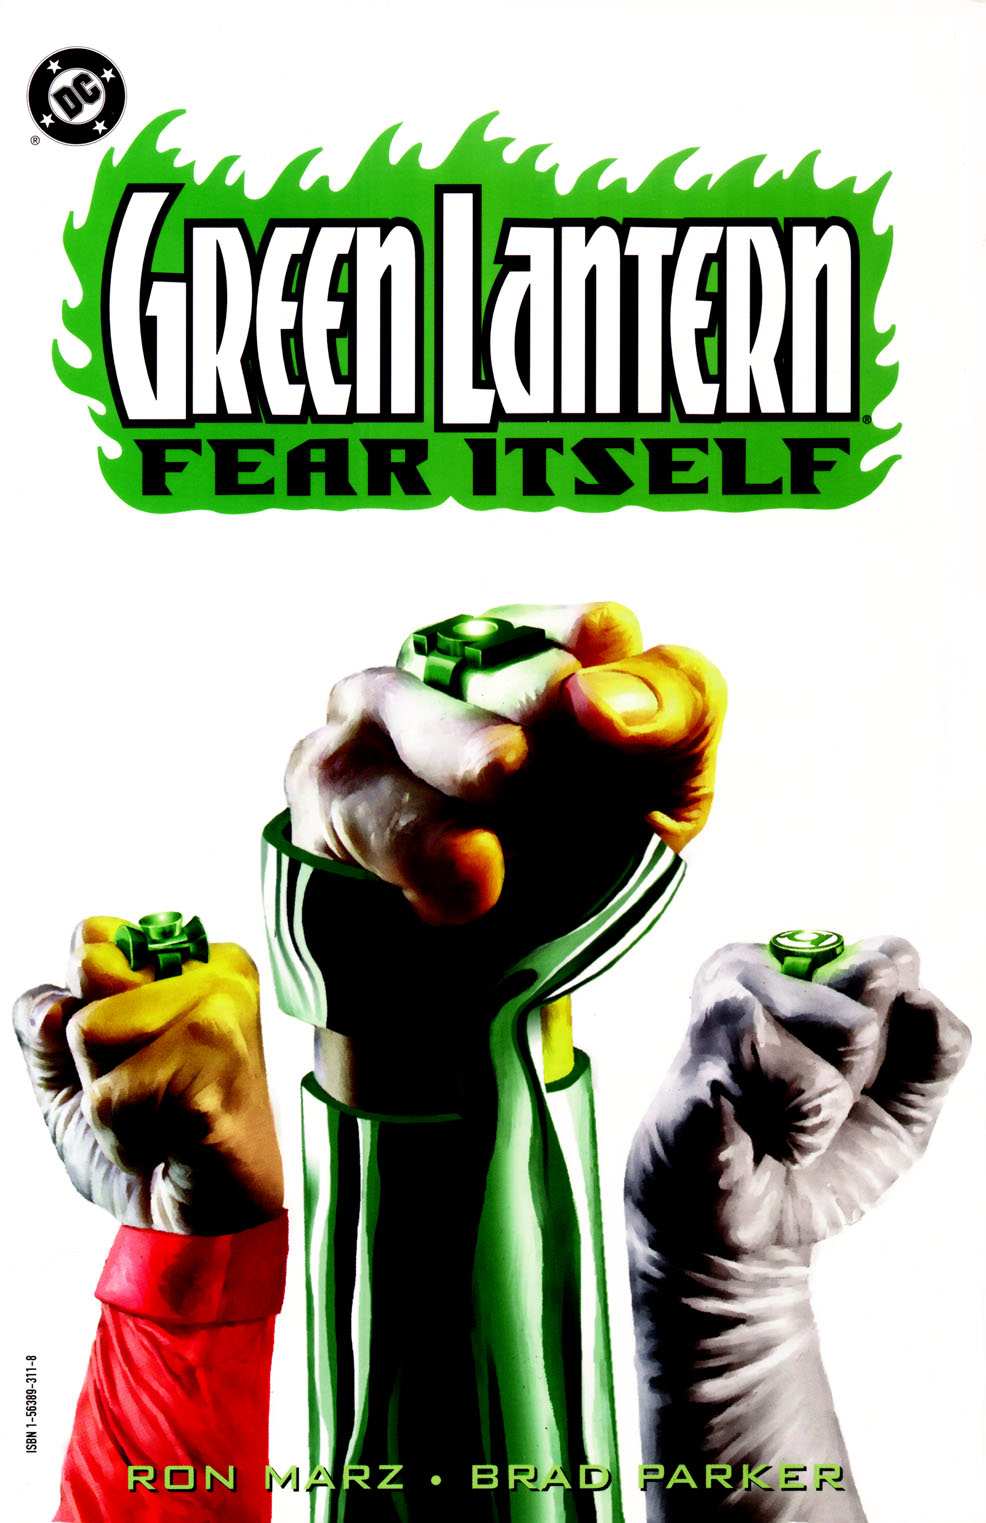 Read online Green Lantern: Fear Itself comic -  Issue # TPB - 1